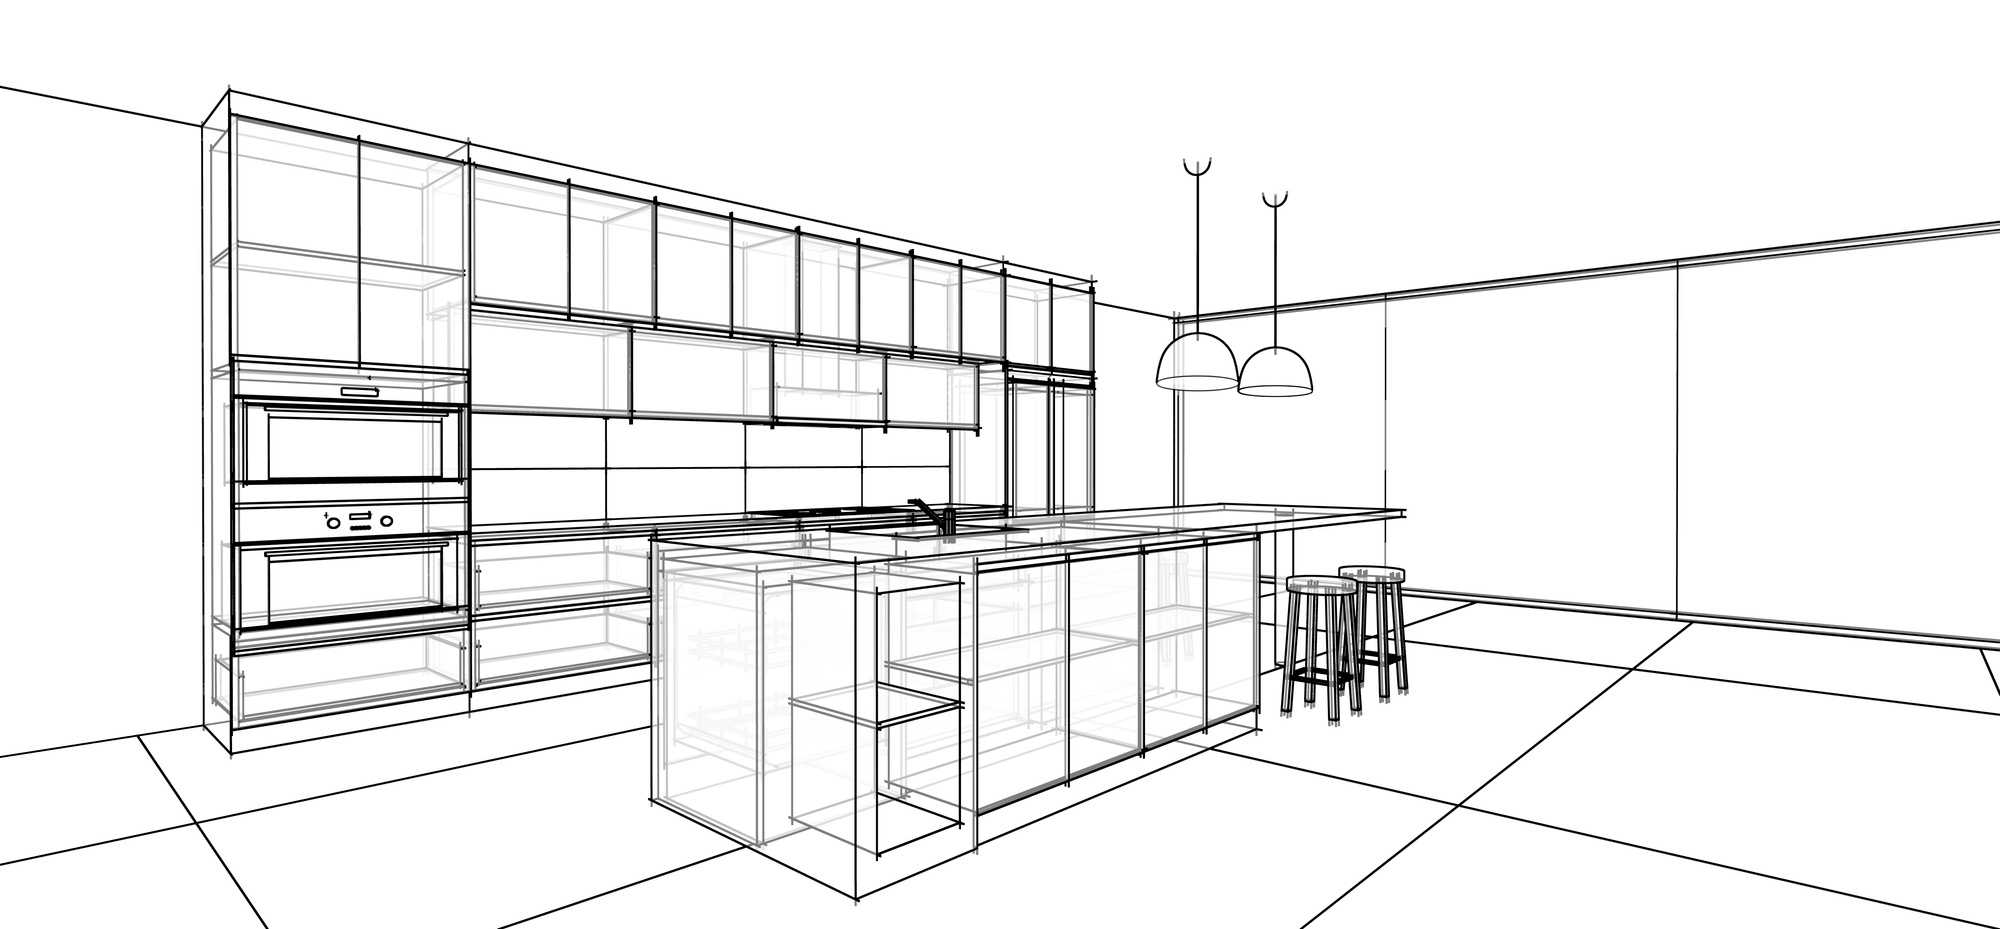 interior design sketch : modern kitchen